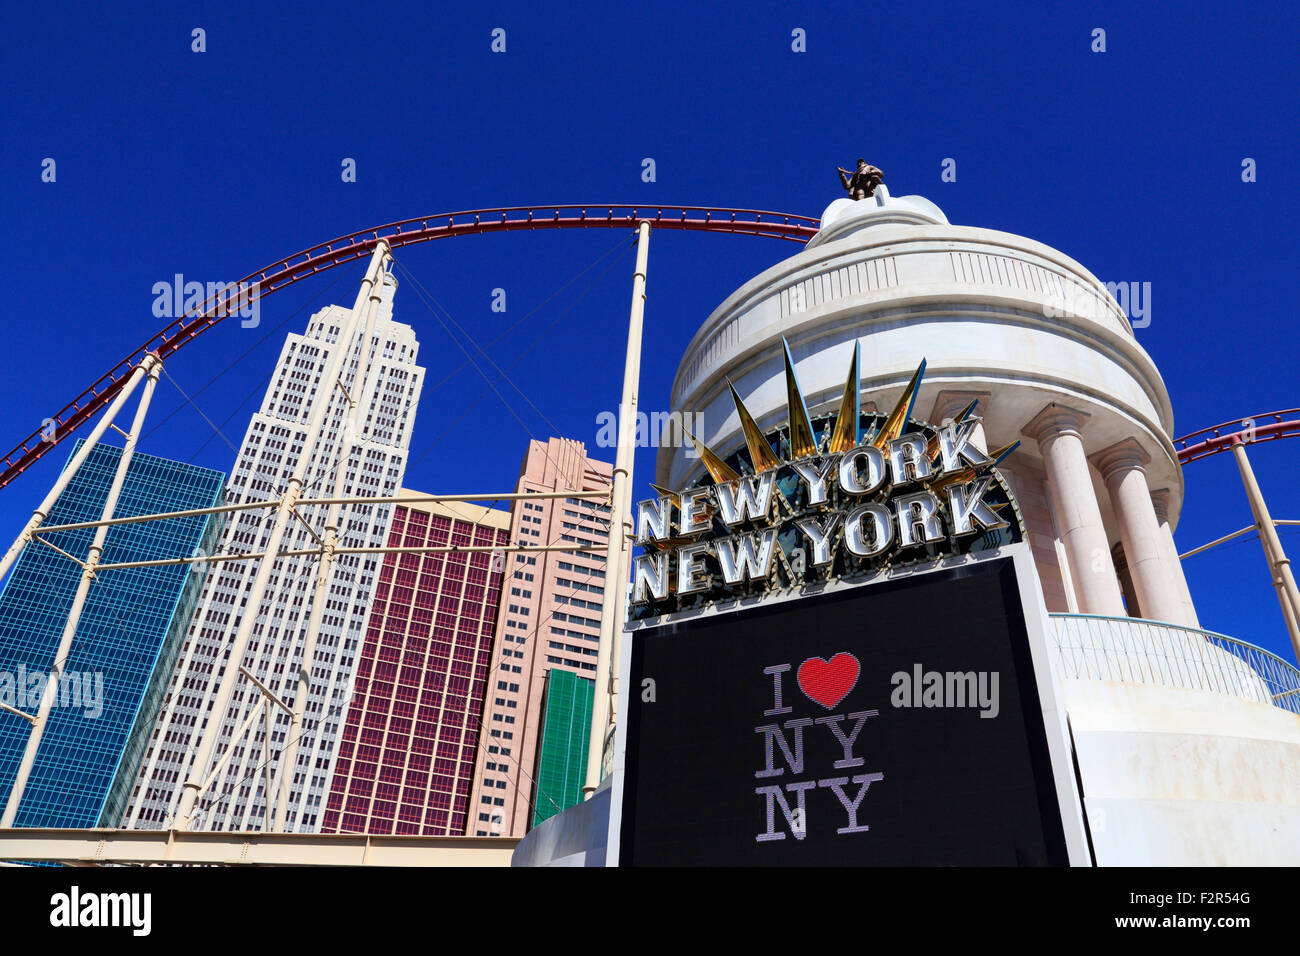 El Hotel New York New York en Las Vegas, Nevada. Foto de stock